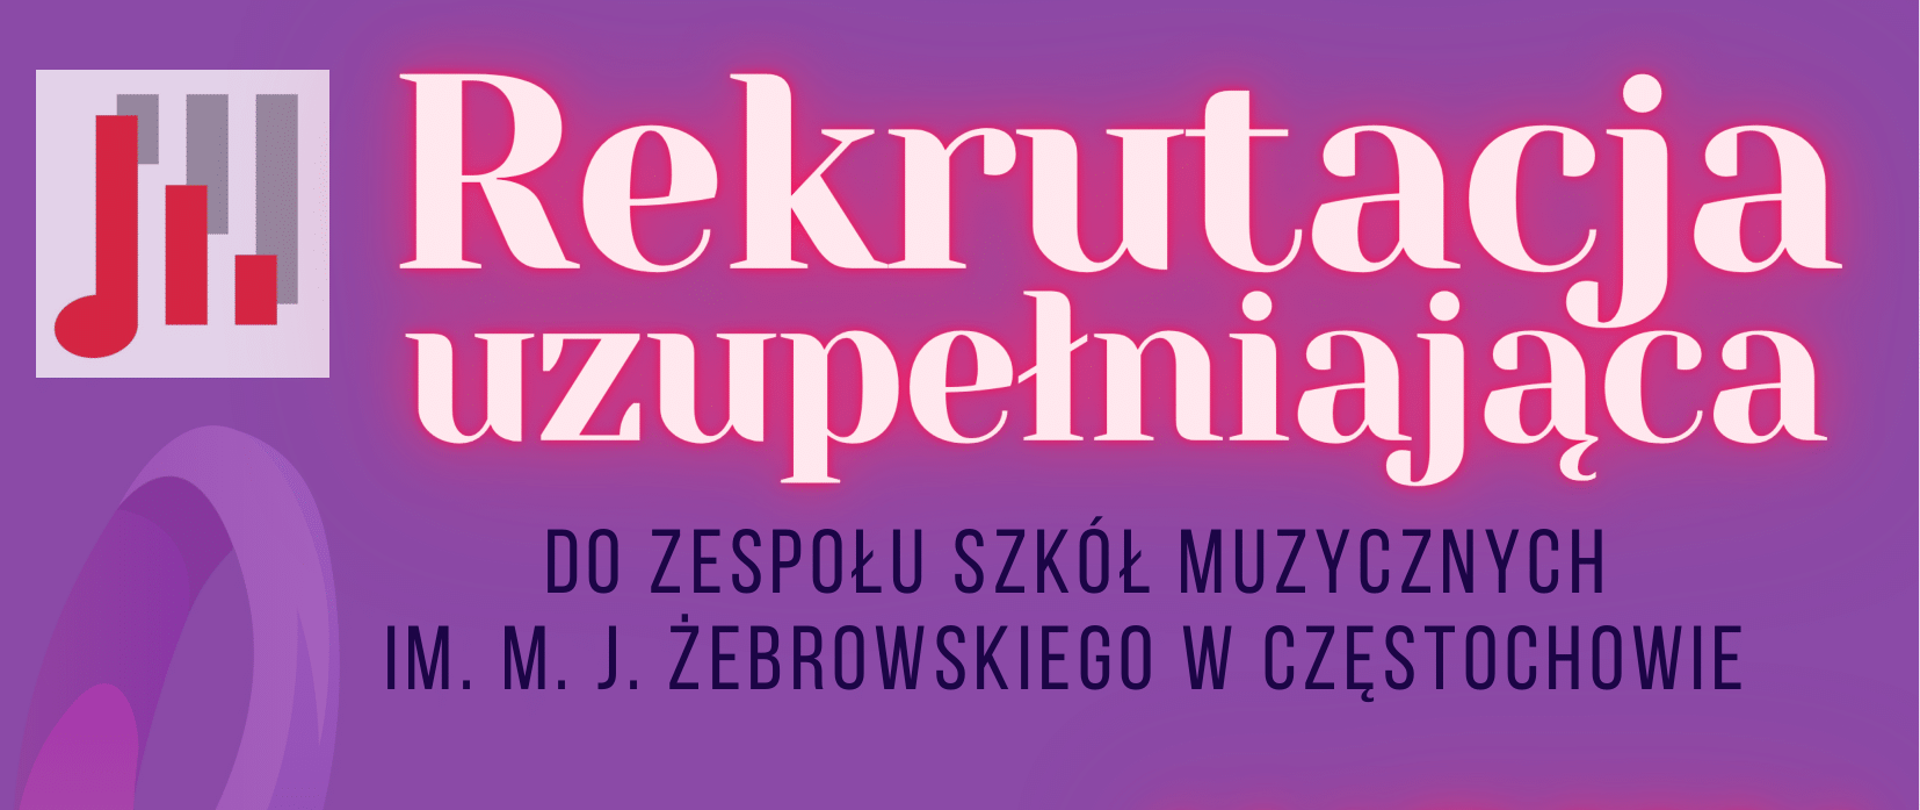 Fioletowe tło, po lewej stronie logo szkoły, informacje dotyczące rekrutacji uzupełniającej do ZSM im. M. J. Żebrowskiego w Częstochowie